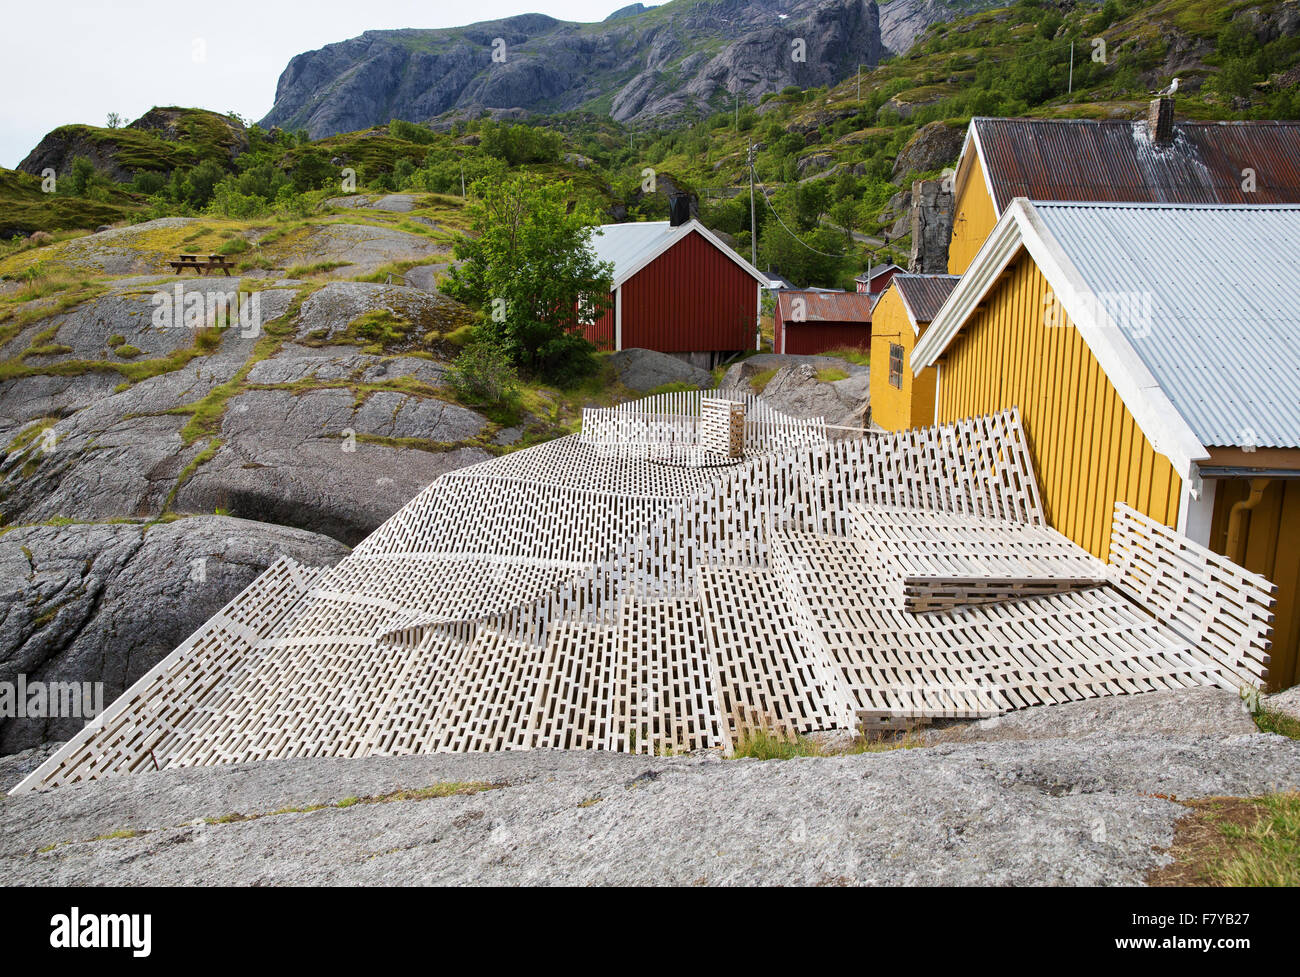 Spa terrazze al sole nel villaggio di Nusfjord in occidentali Isole Lofoten - una volta un importante centro per la Norvegia il merluzzo industria fishng Foto Stock